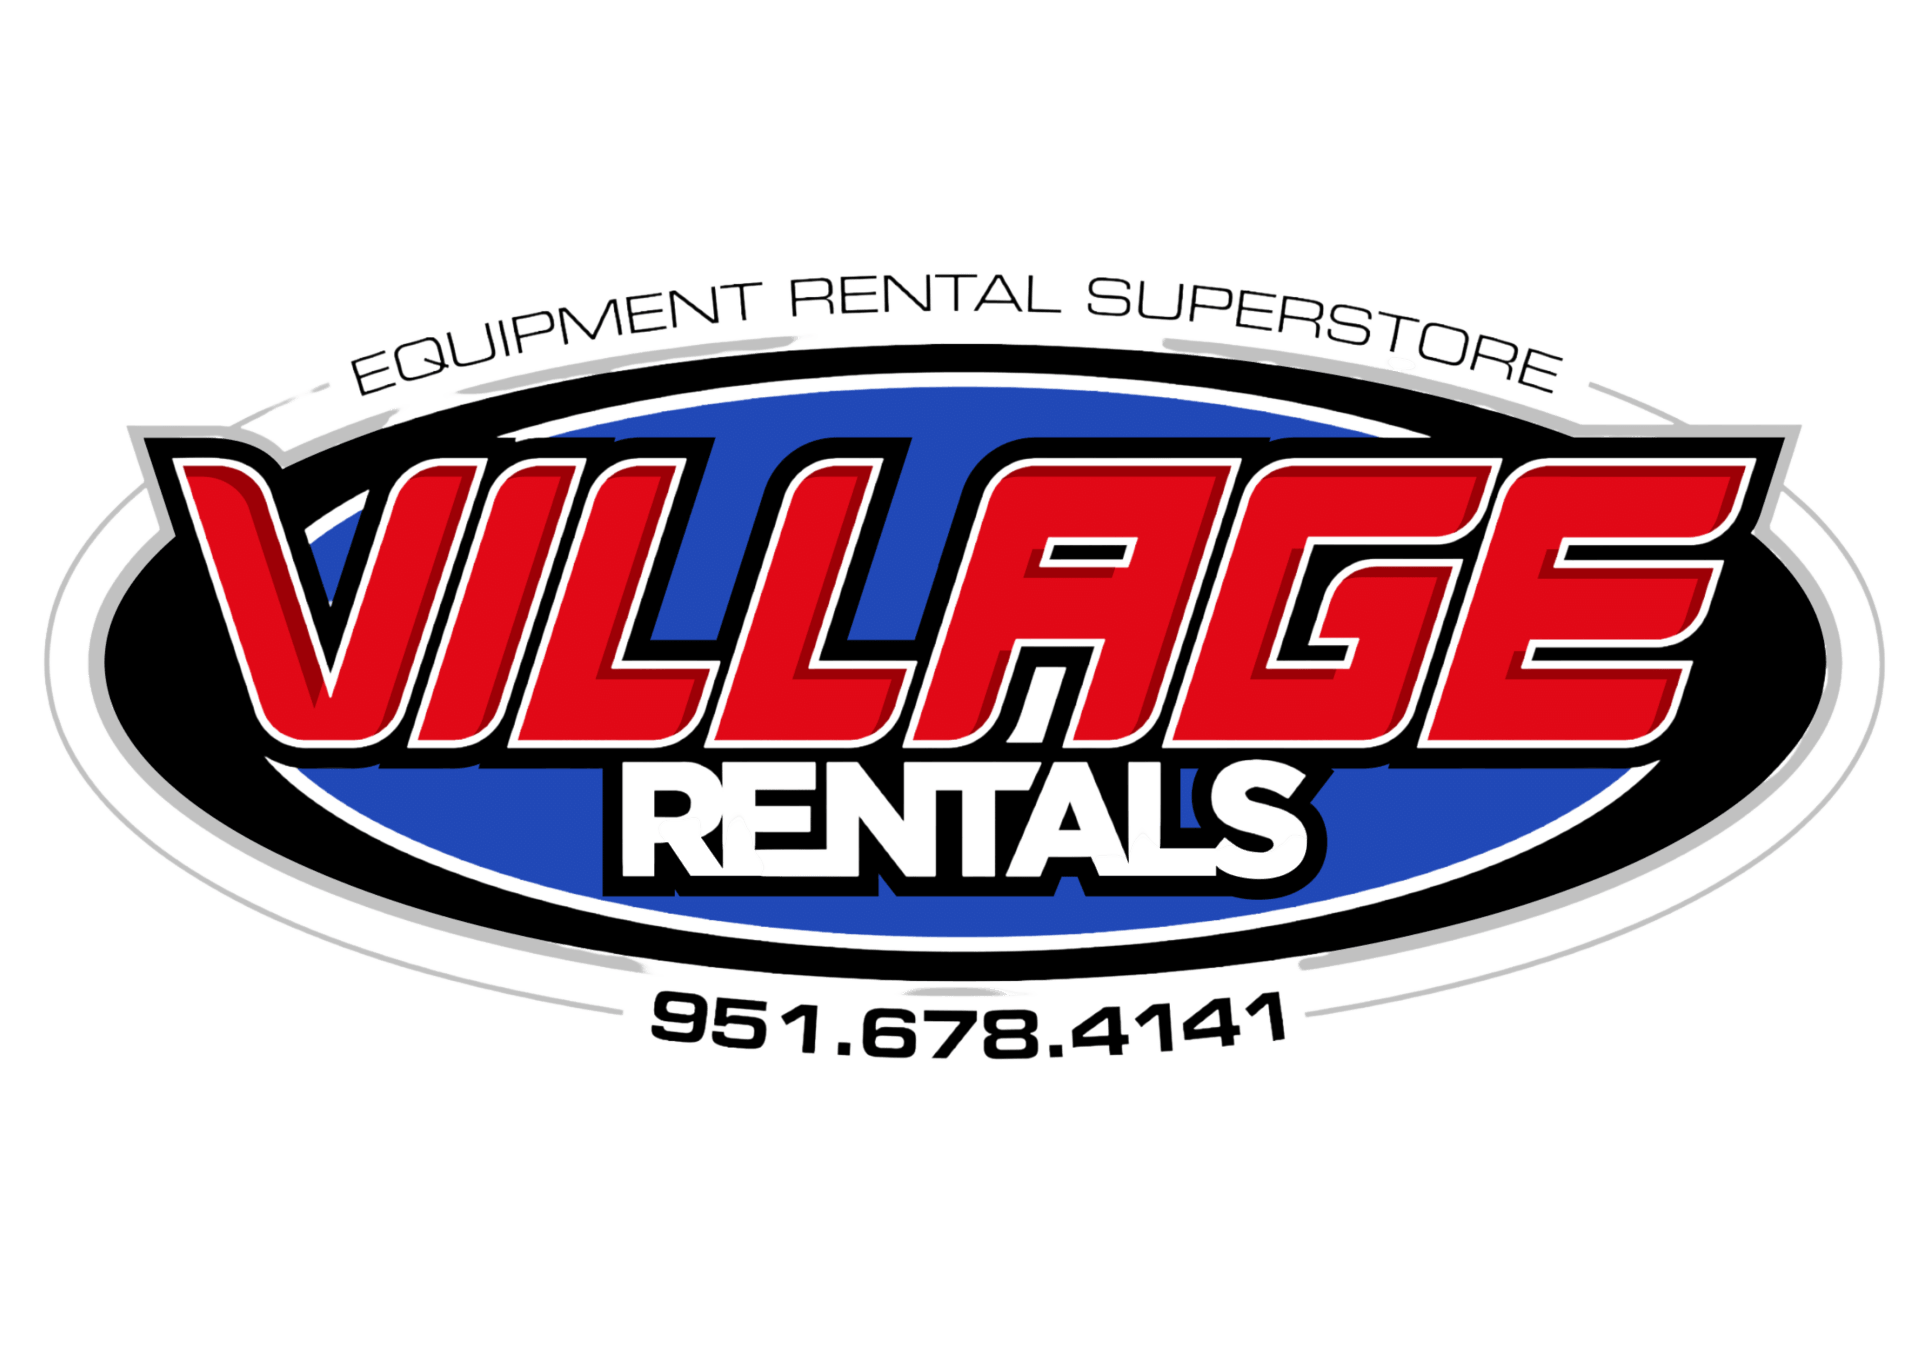 village equipment rentals logo